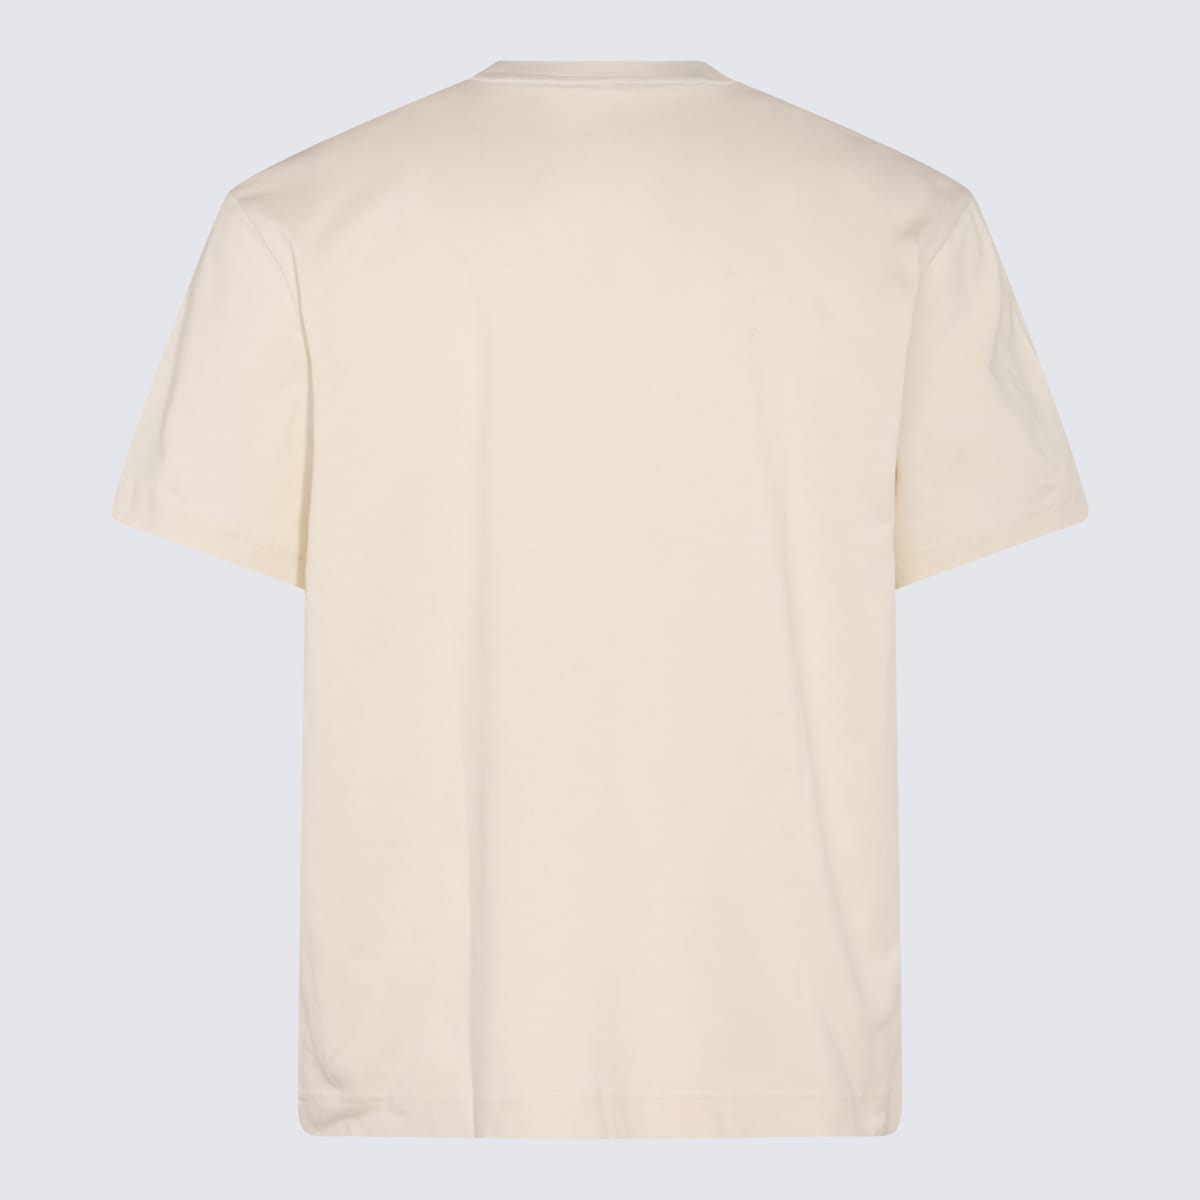 Sunnei Light Beige Cotton T-shirt